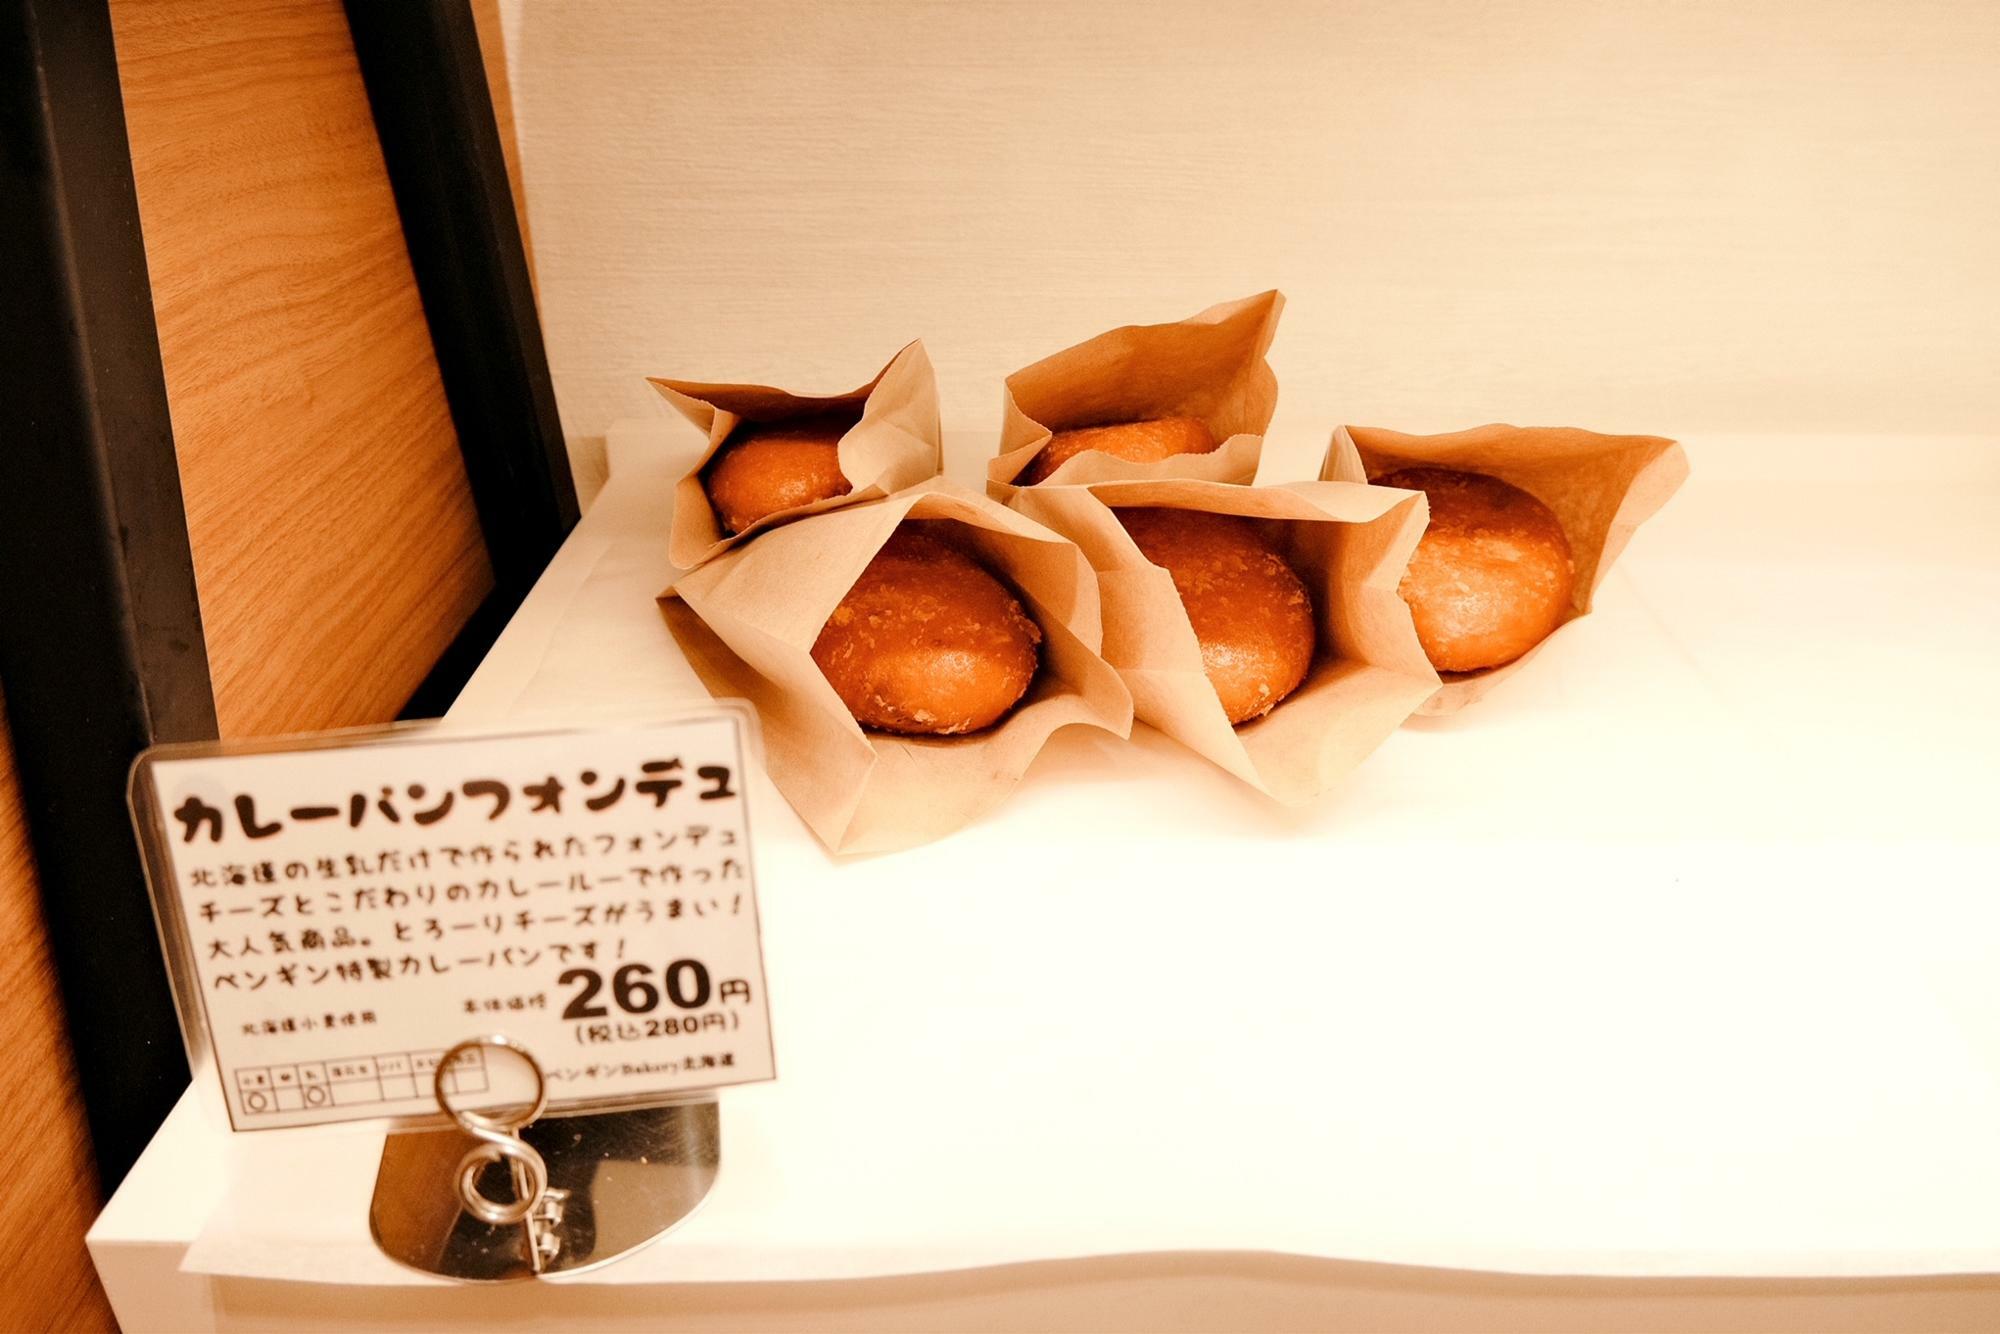 「カレーパンフォンデュ」280円(税込)